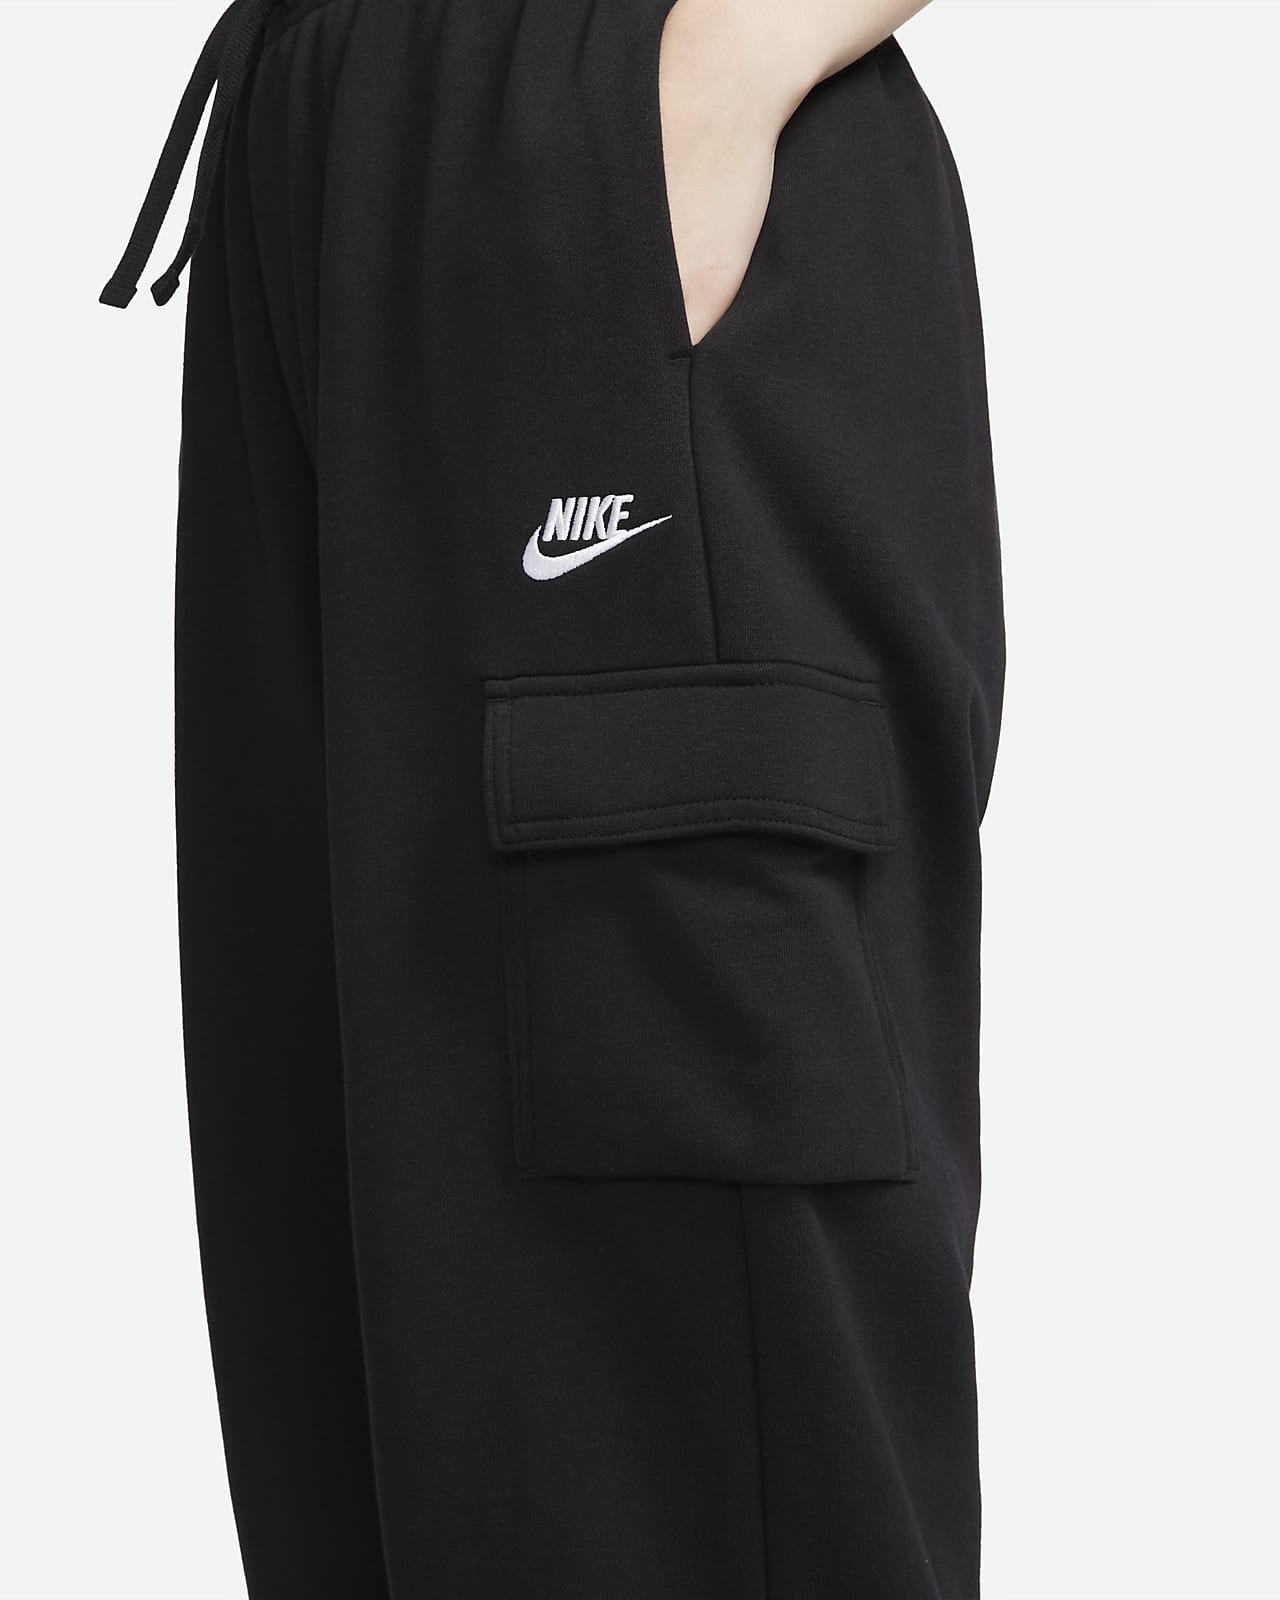 Nike Sportswear Club Fleece Women's Mid-Rise Oversized Cargo Tracksuit Bottoms. AU